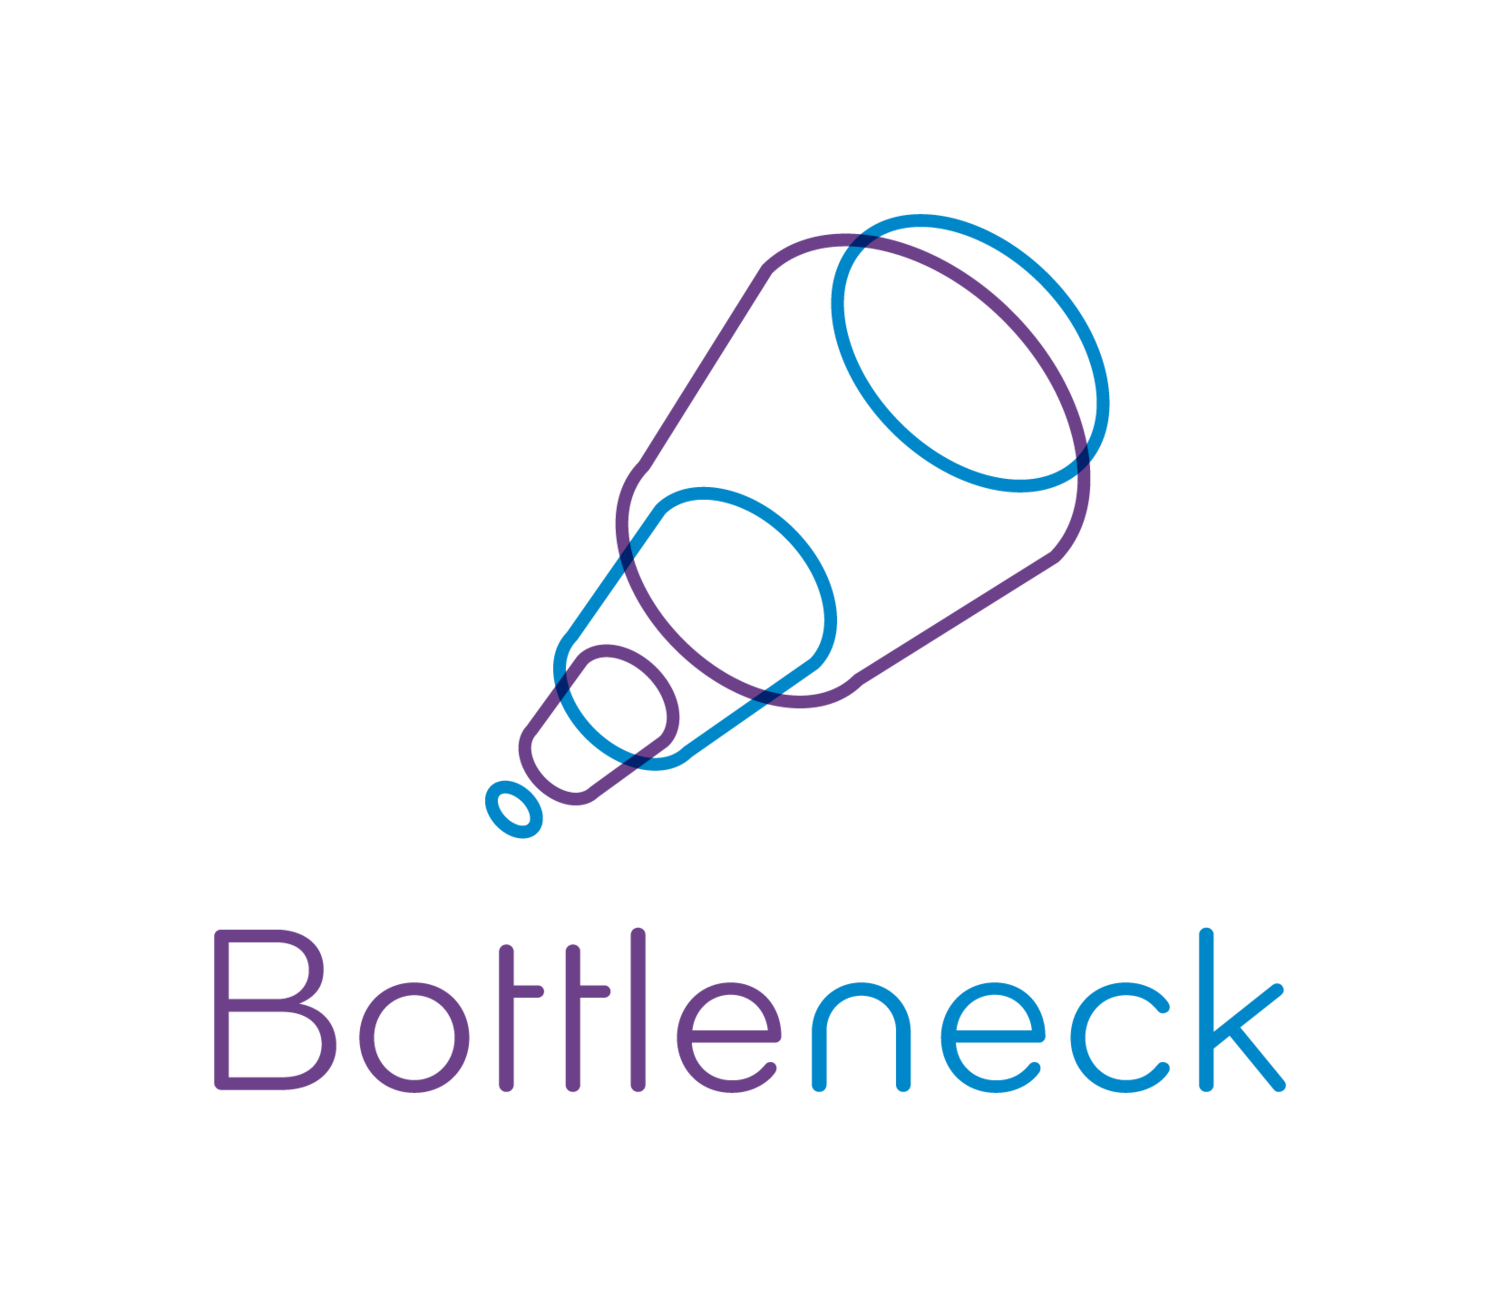 Bottleneck 